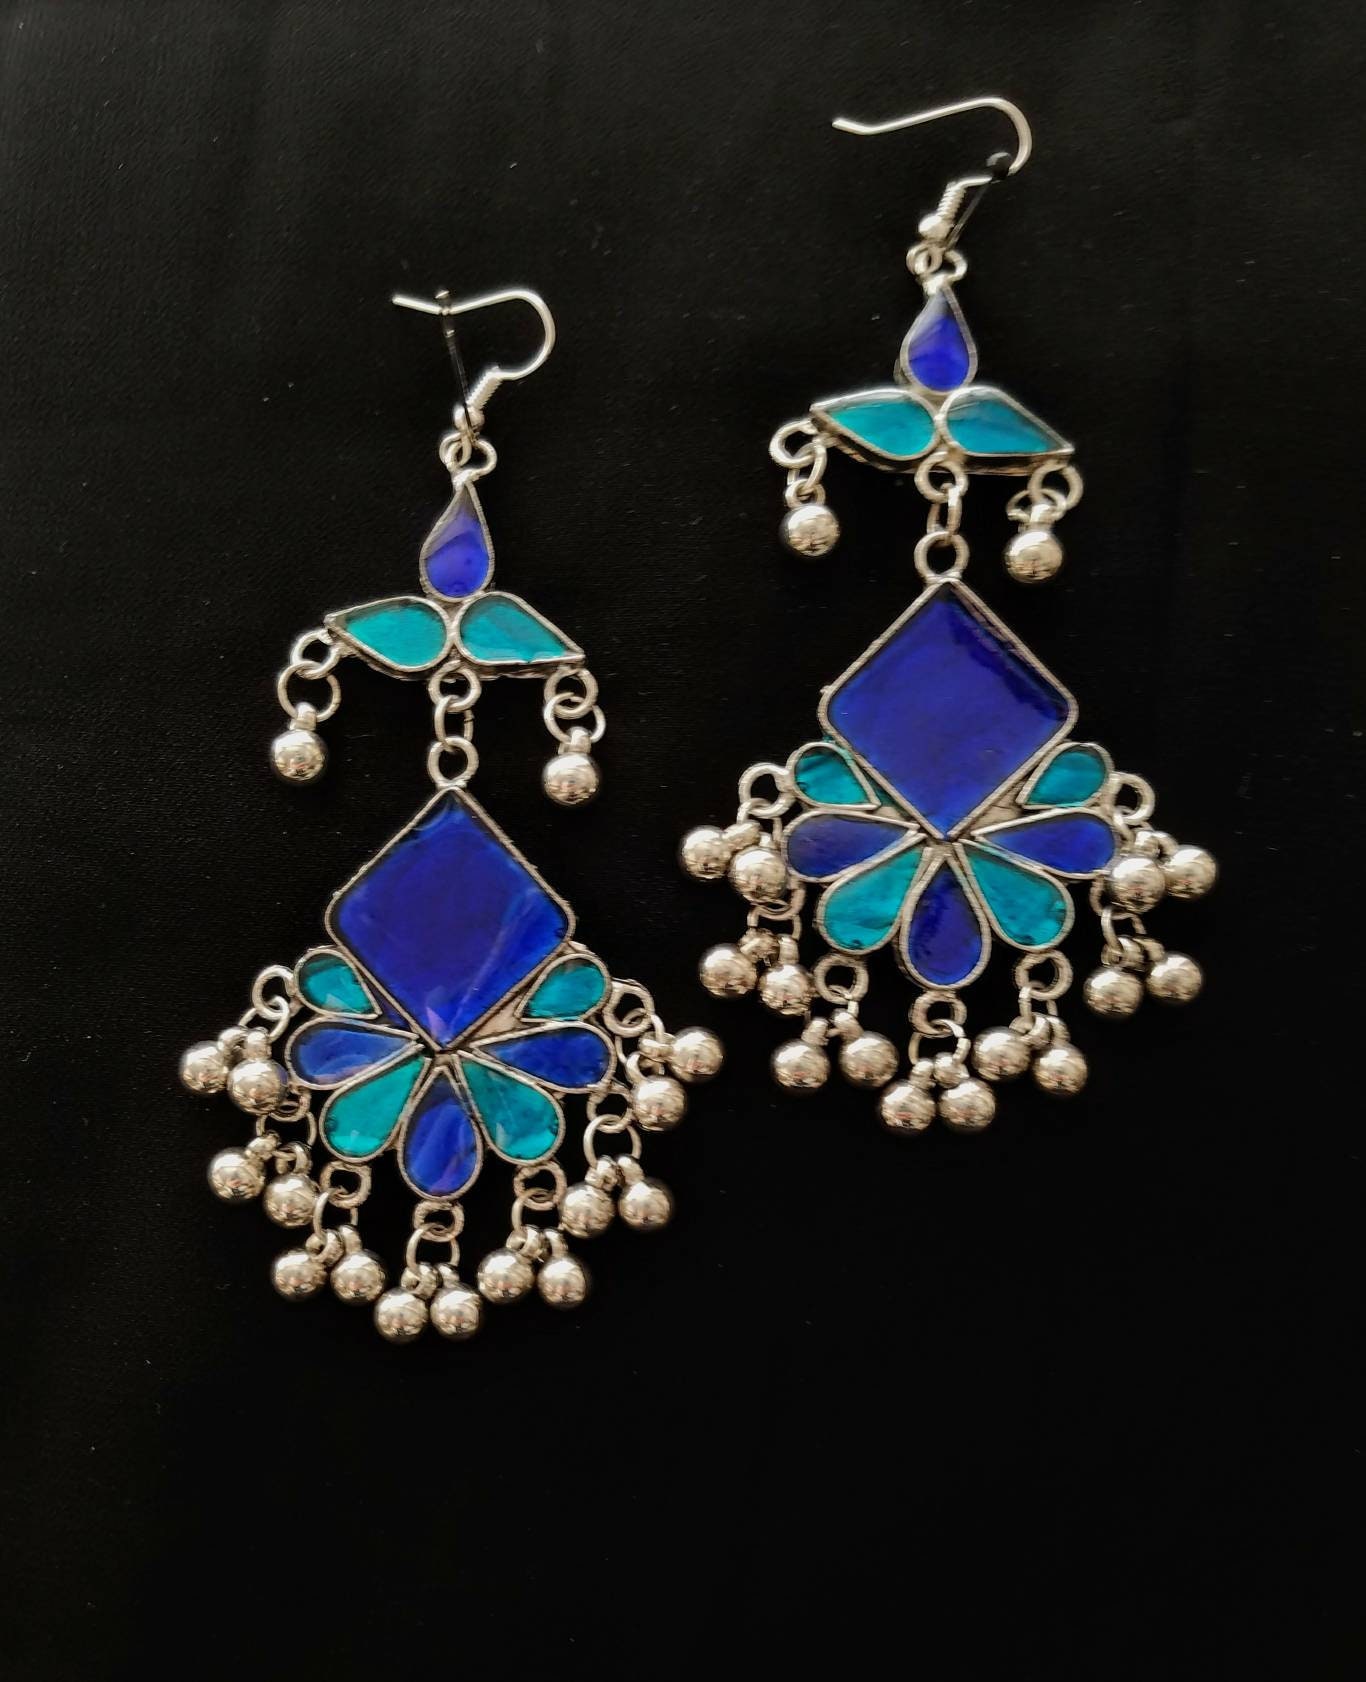 Afghani jewelry, Afghani earrings, blue boho earrings, Kuchi earrings ...